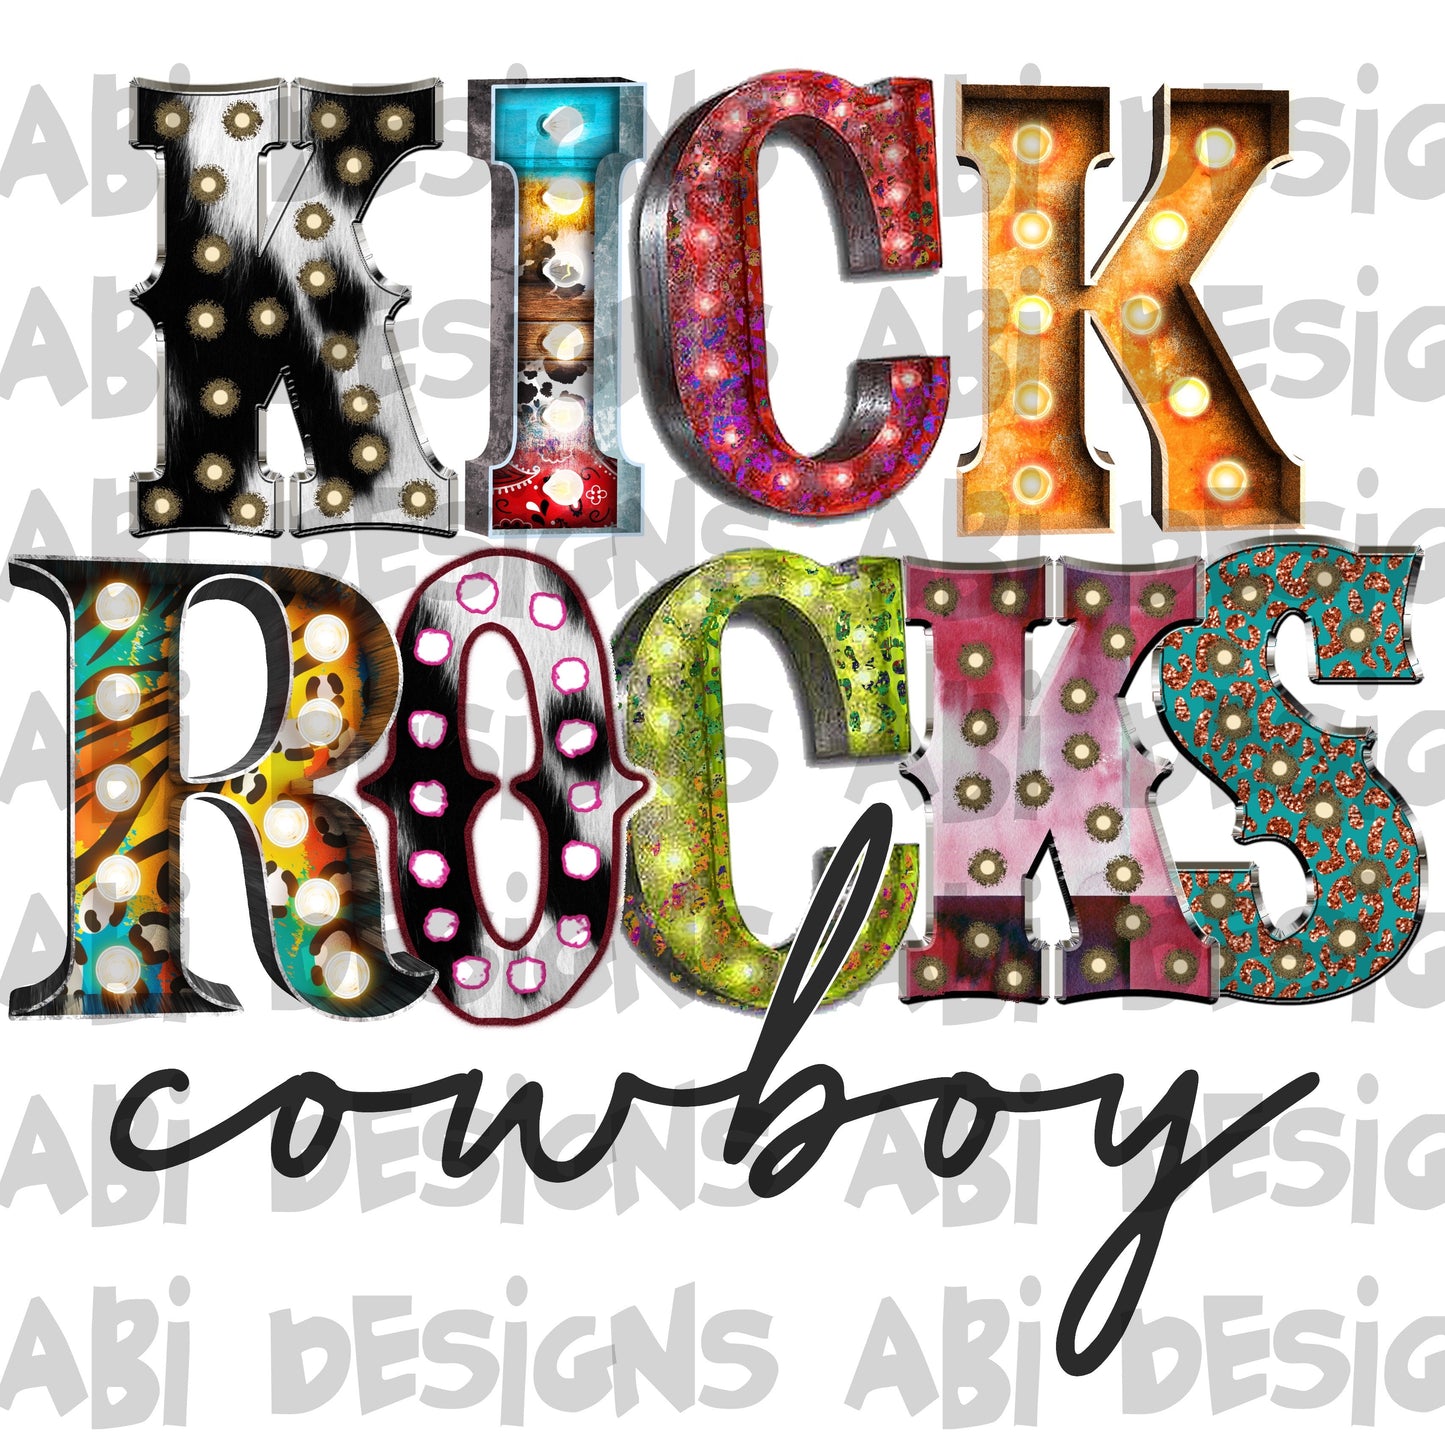 Kick rocks cowboy-DTF